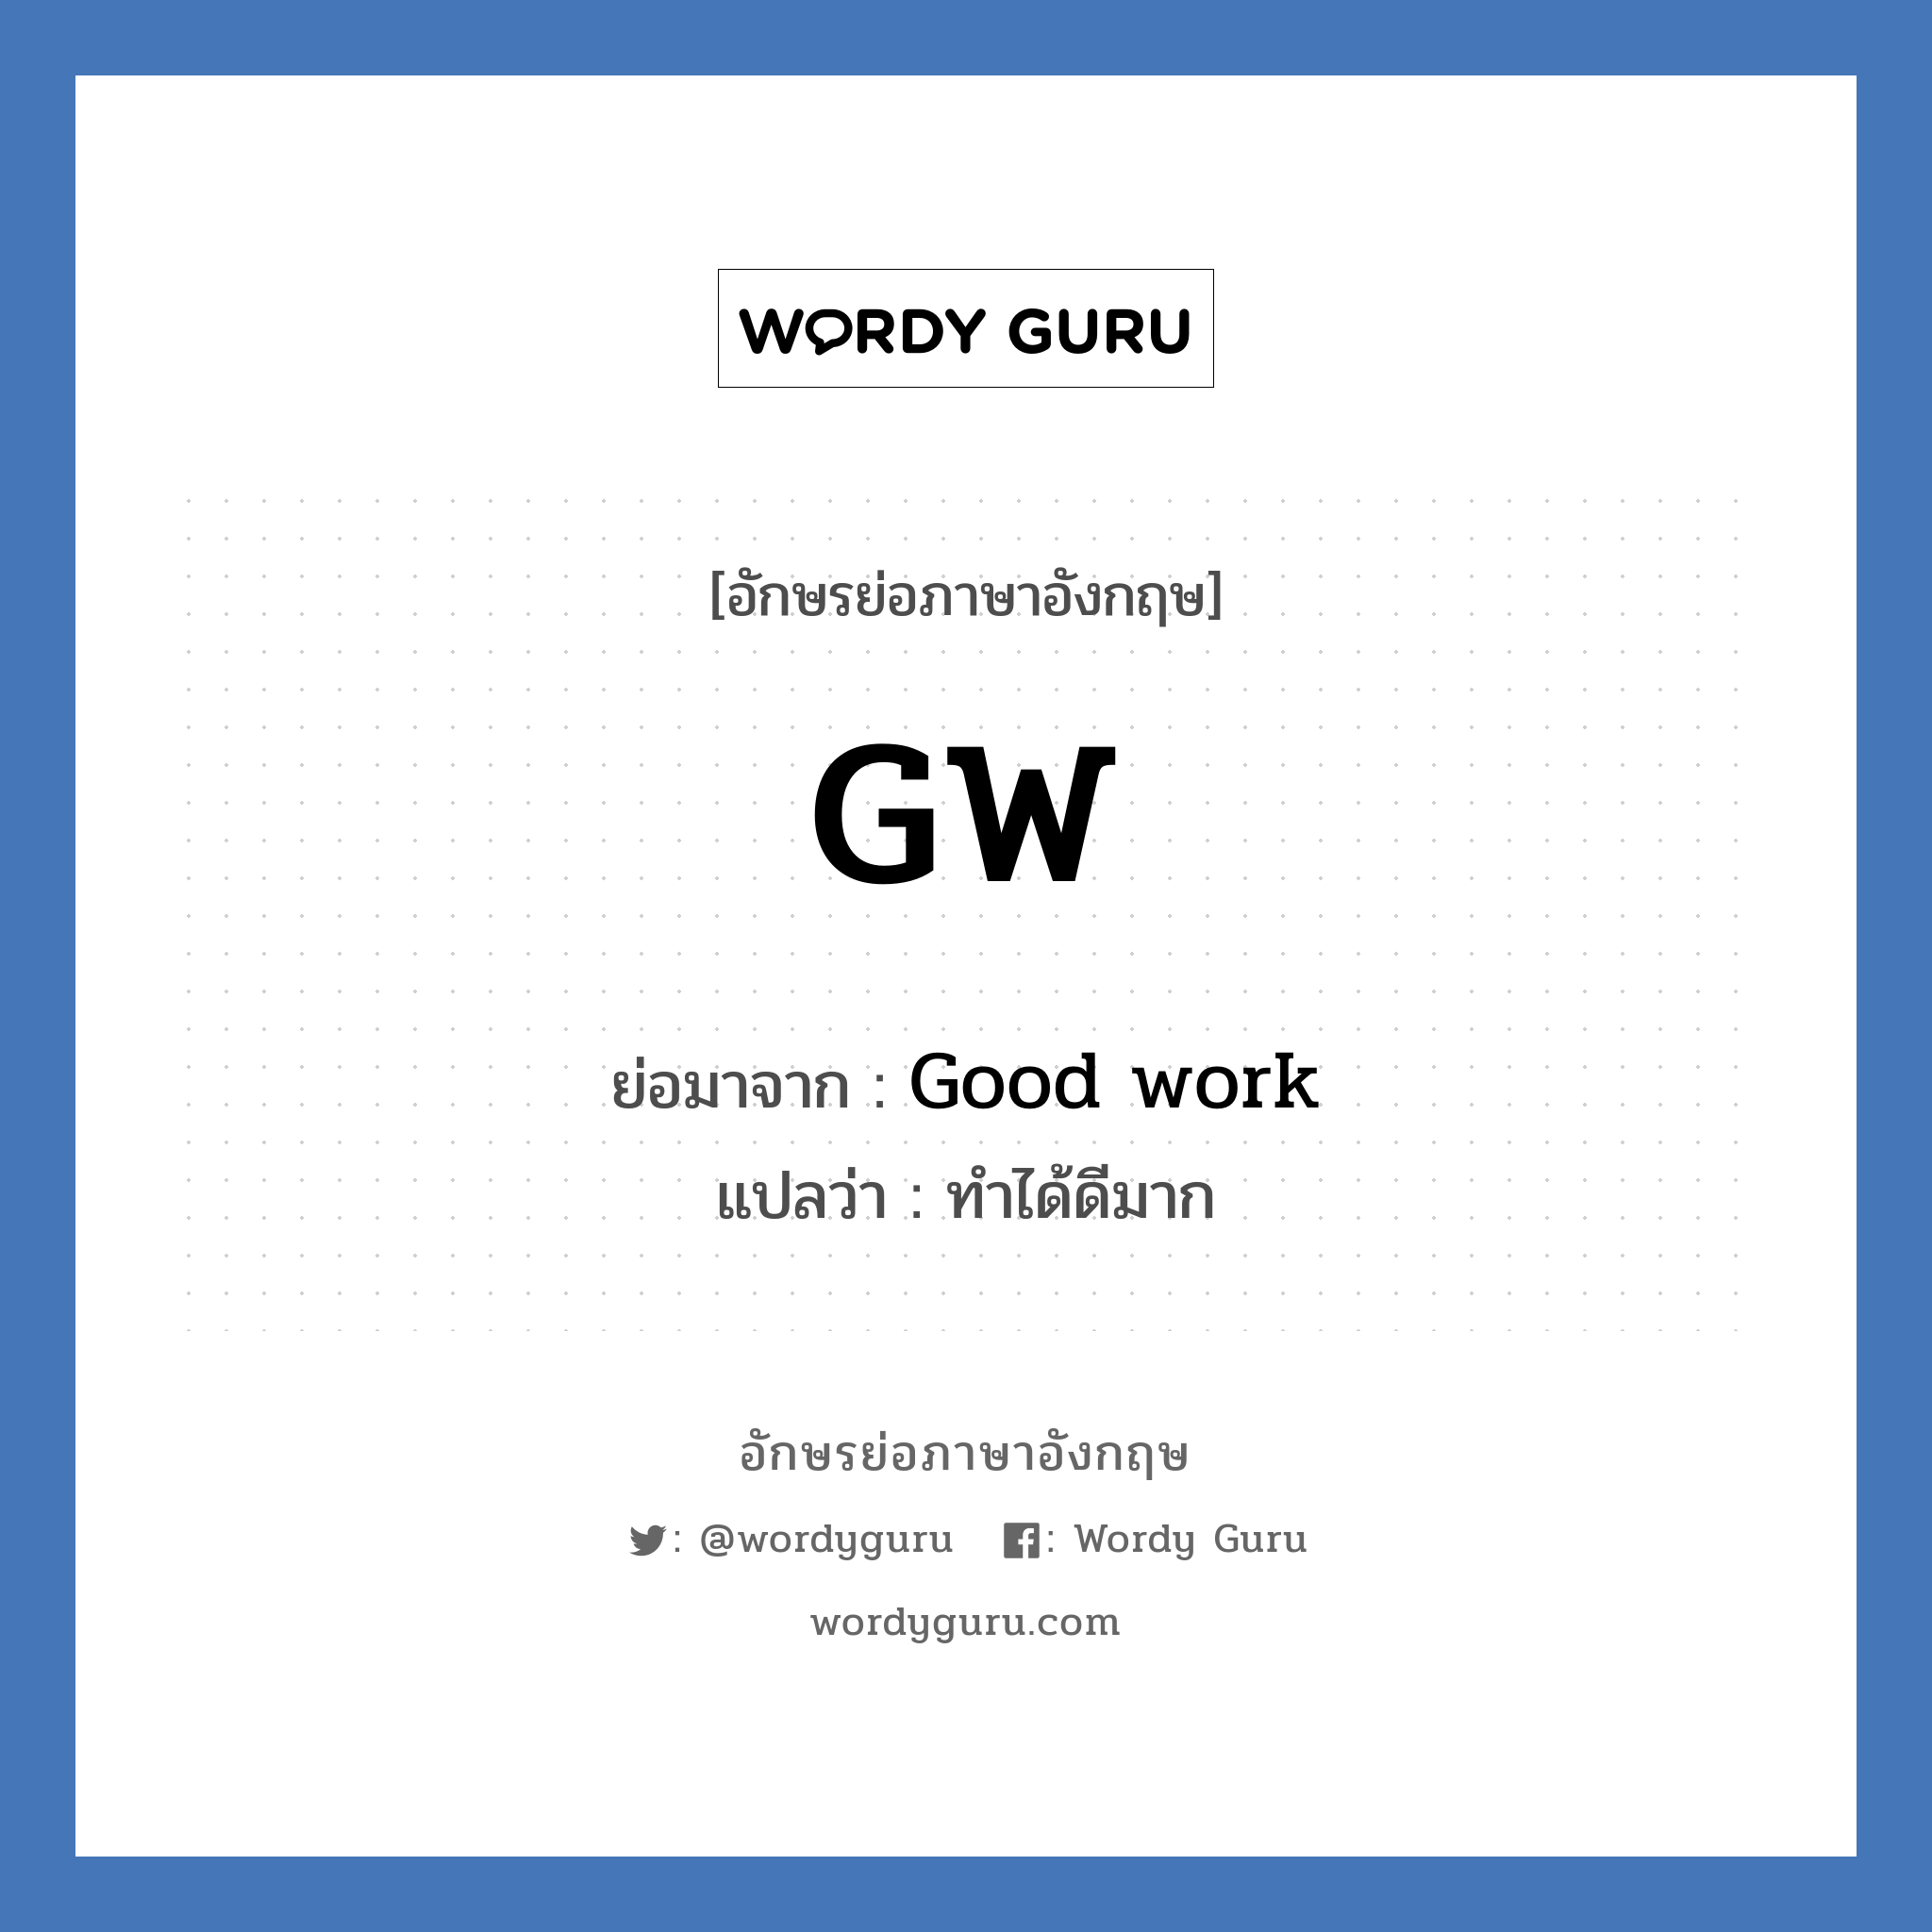 Good work คำย่อคือ? แปลว่า?, อักษรย่อภาษาอังกฤษ Good work ย่อมาจาก GW แปลว่า ทำได้ดีมาก